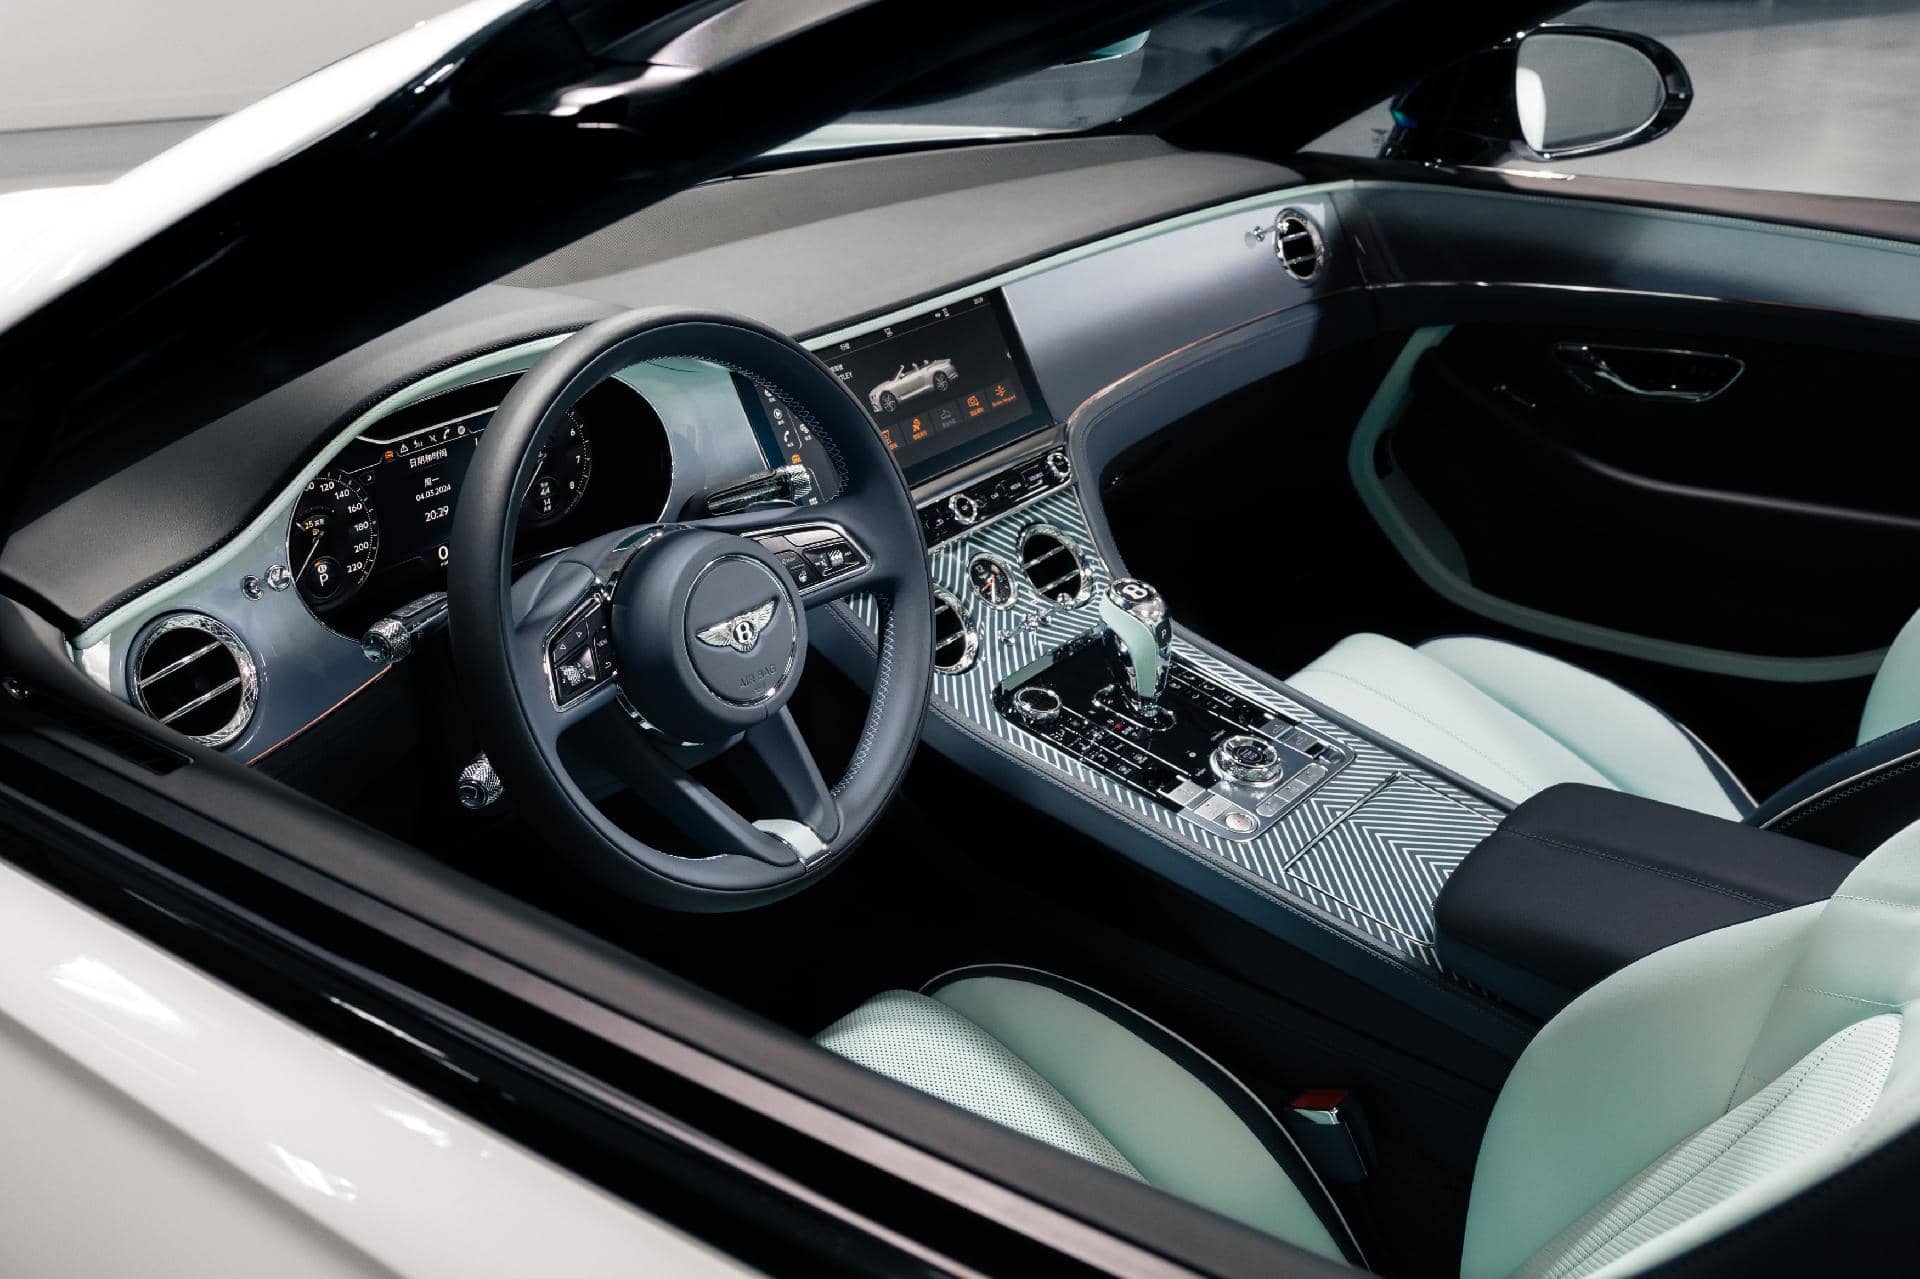 Vista lateral del lujoso interior del Bentley Continental GTC, destacando su elegancia y tecnología.